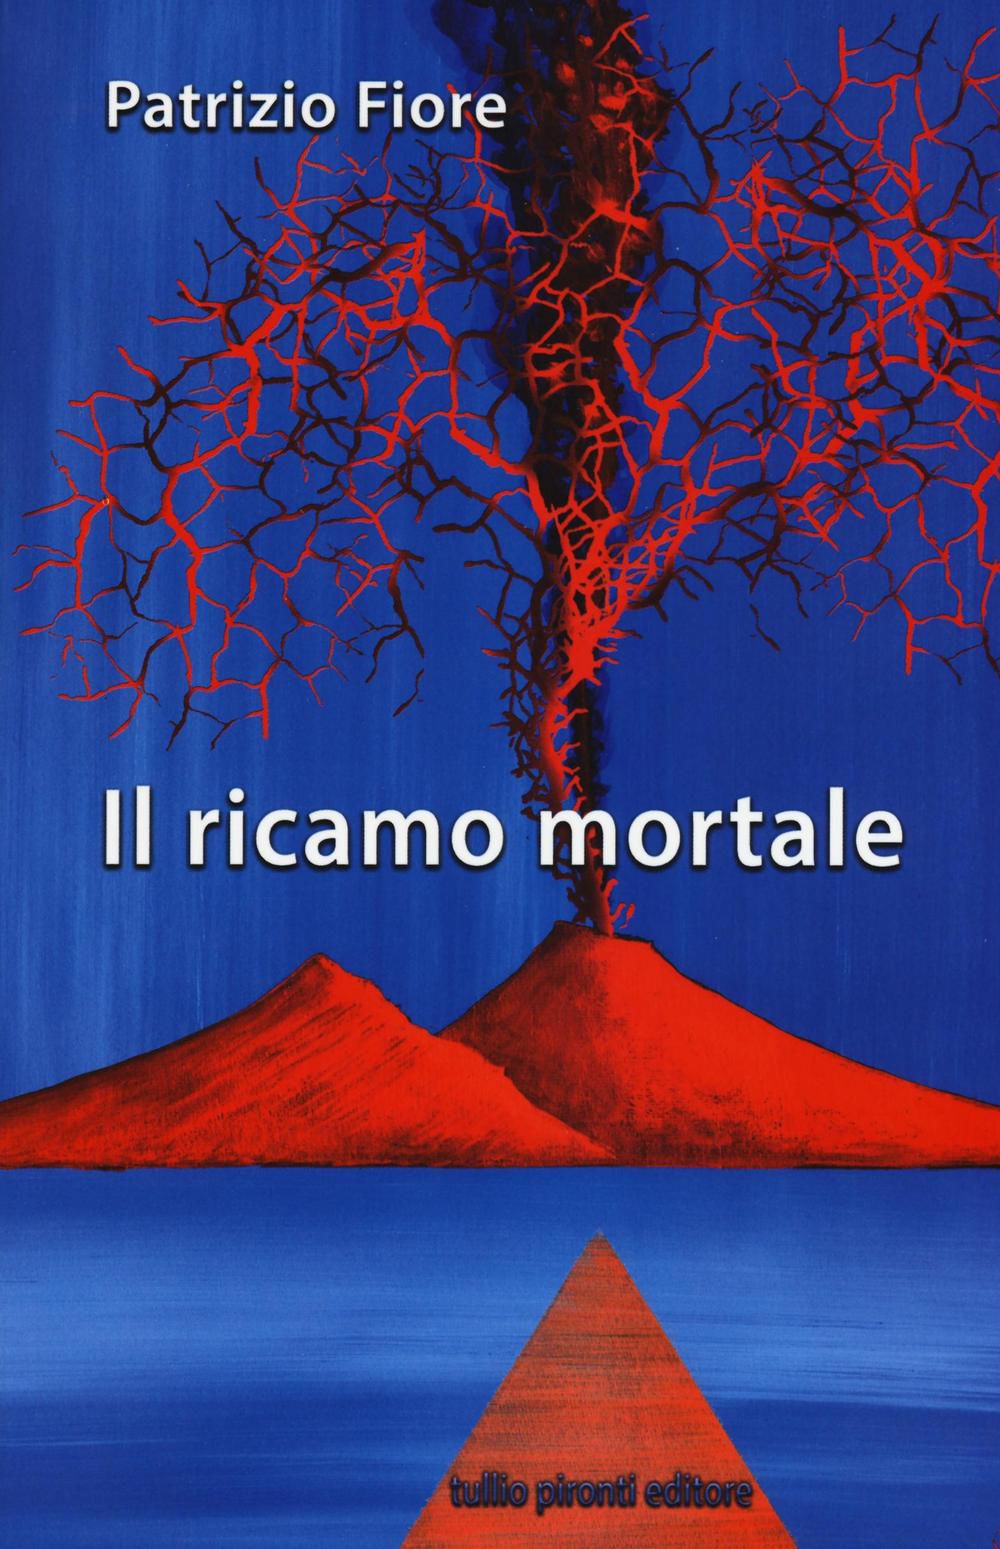 La copertina del libro 'Il ricamo mortale' di Patrizio Fiore